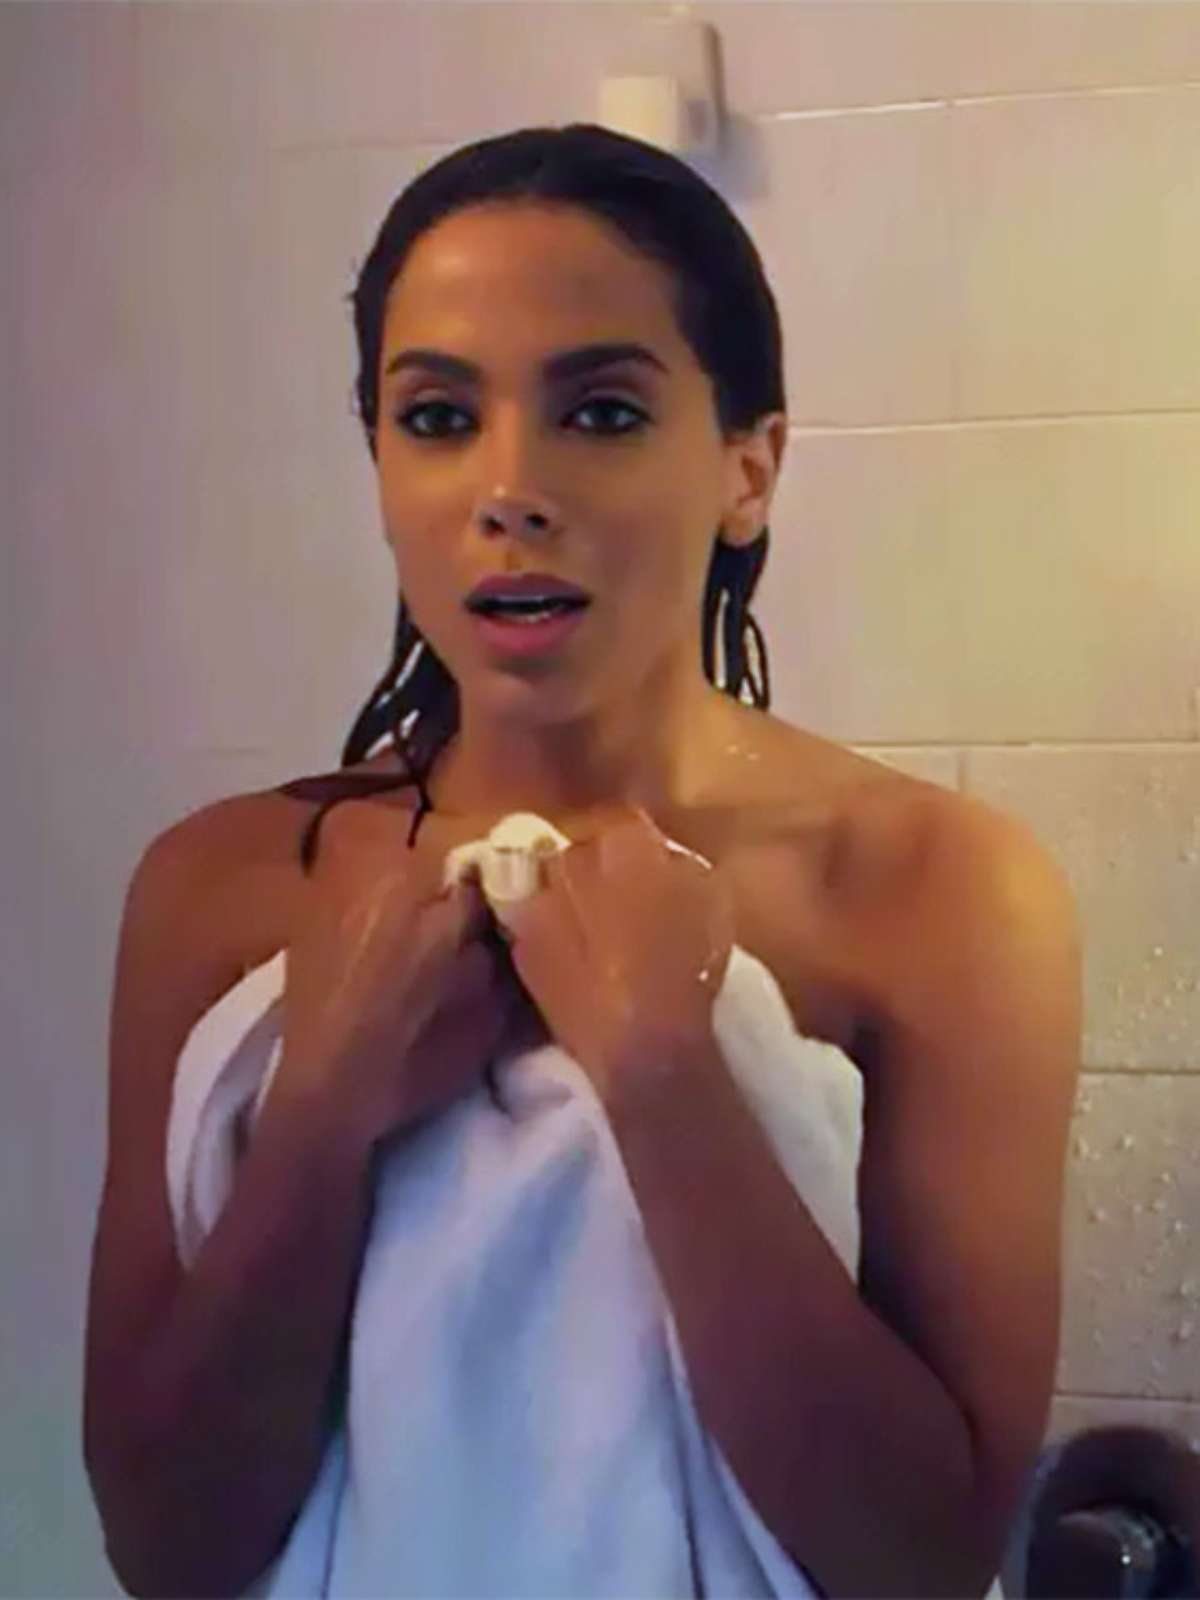 ASSISTIR VIDEO: Anitta aparece tomando banho em novo teaser de “Elite”